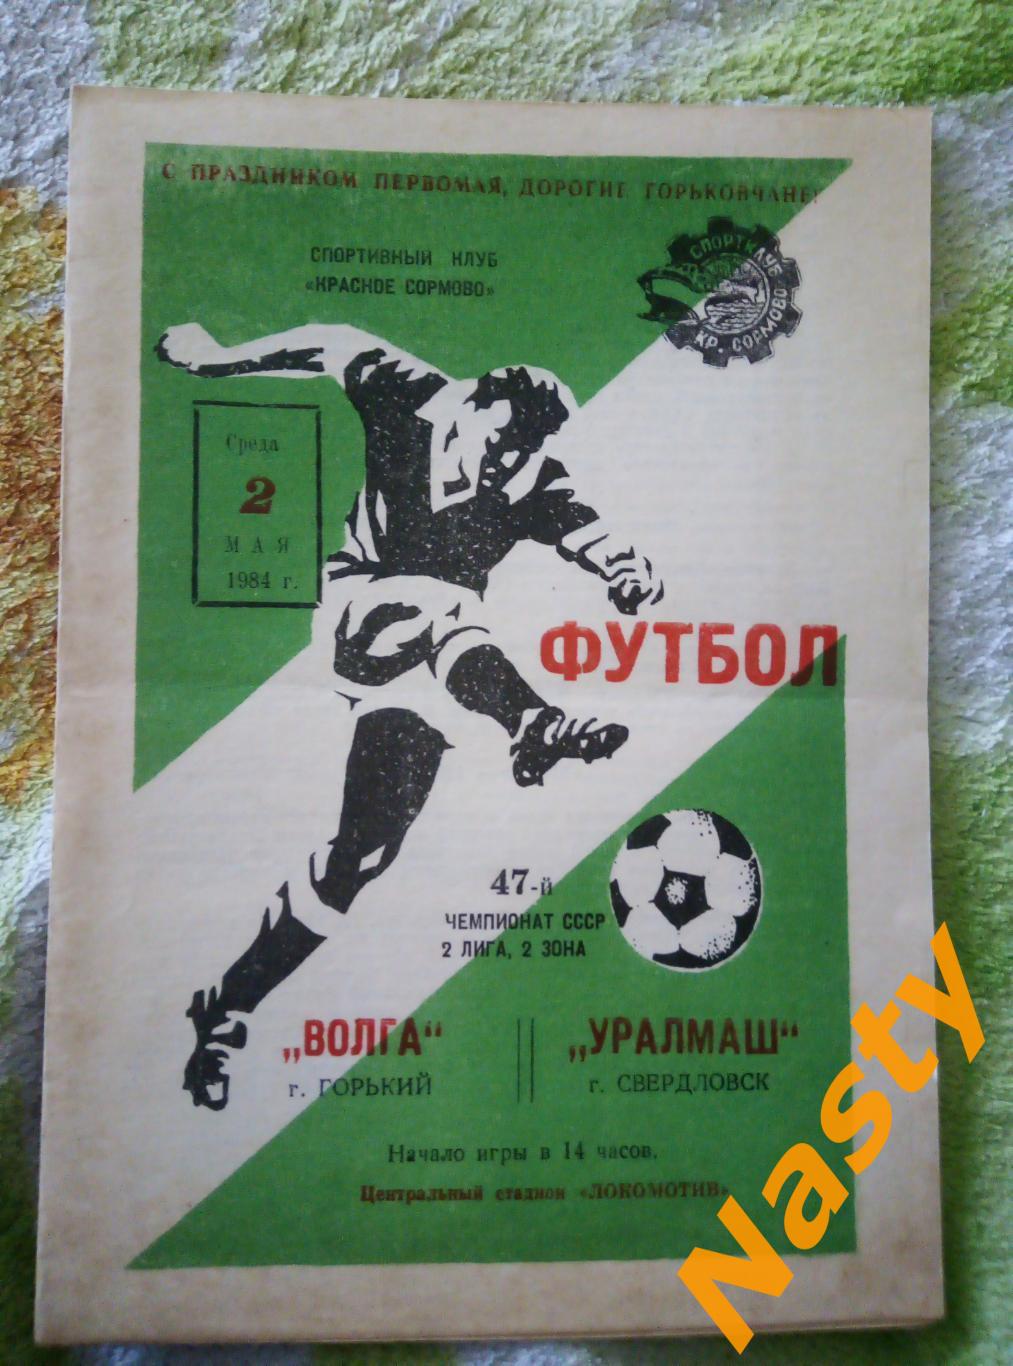 Волга Горький-Уралмаш Свердловск 2.05.1984 г. 2 лига, 2 зона СССР